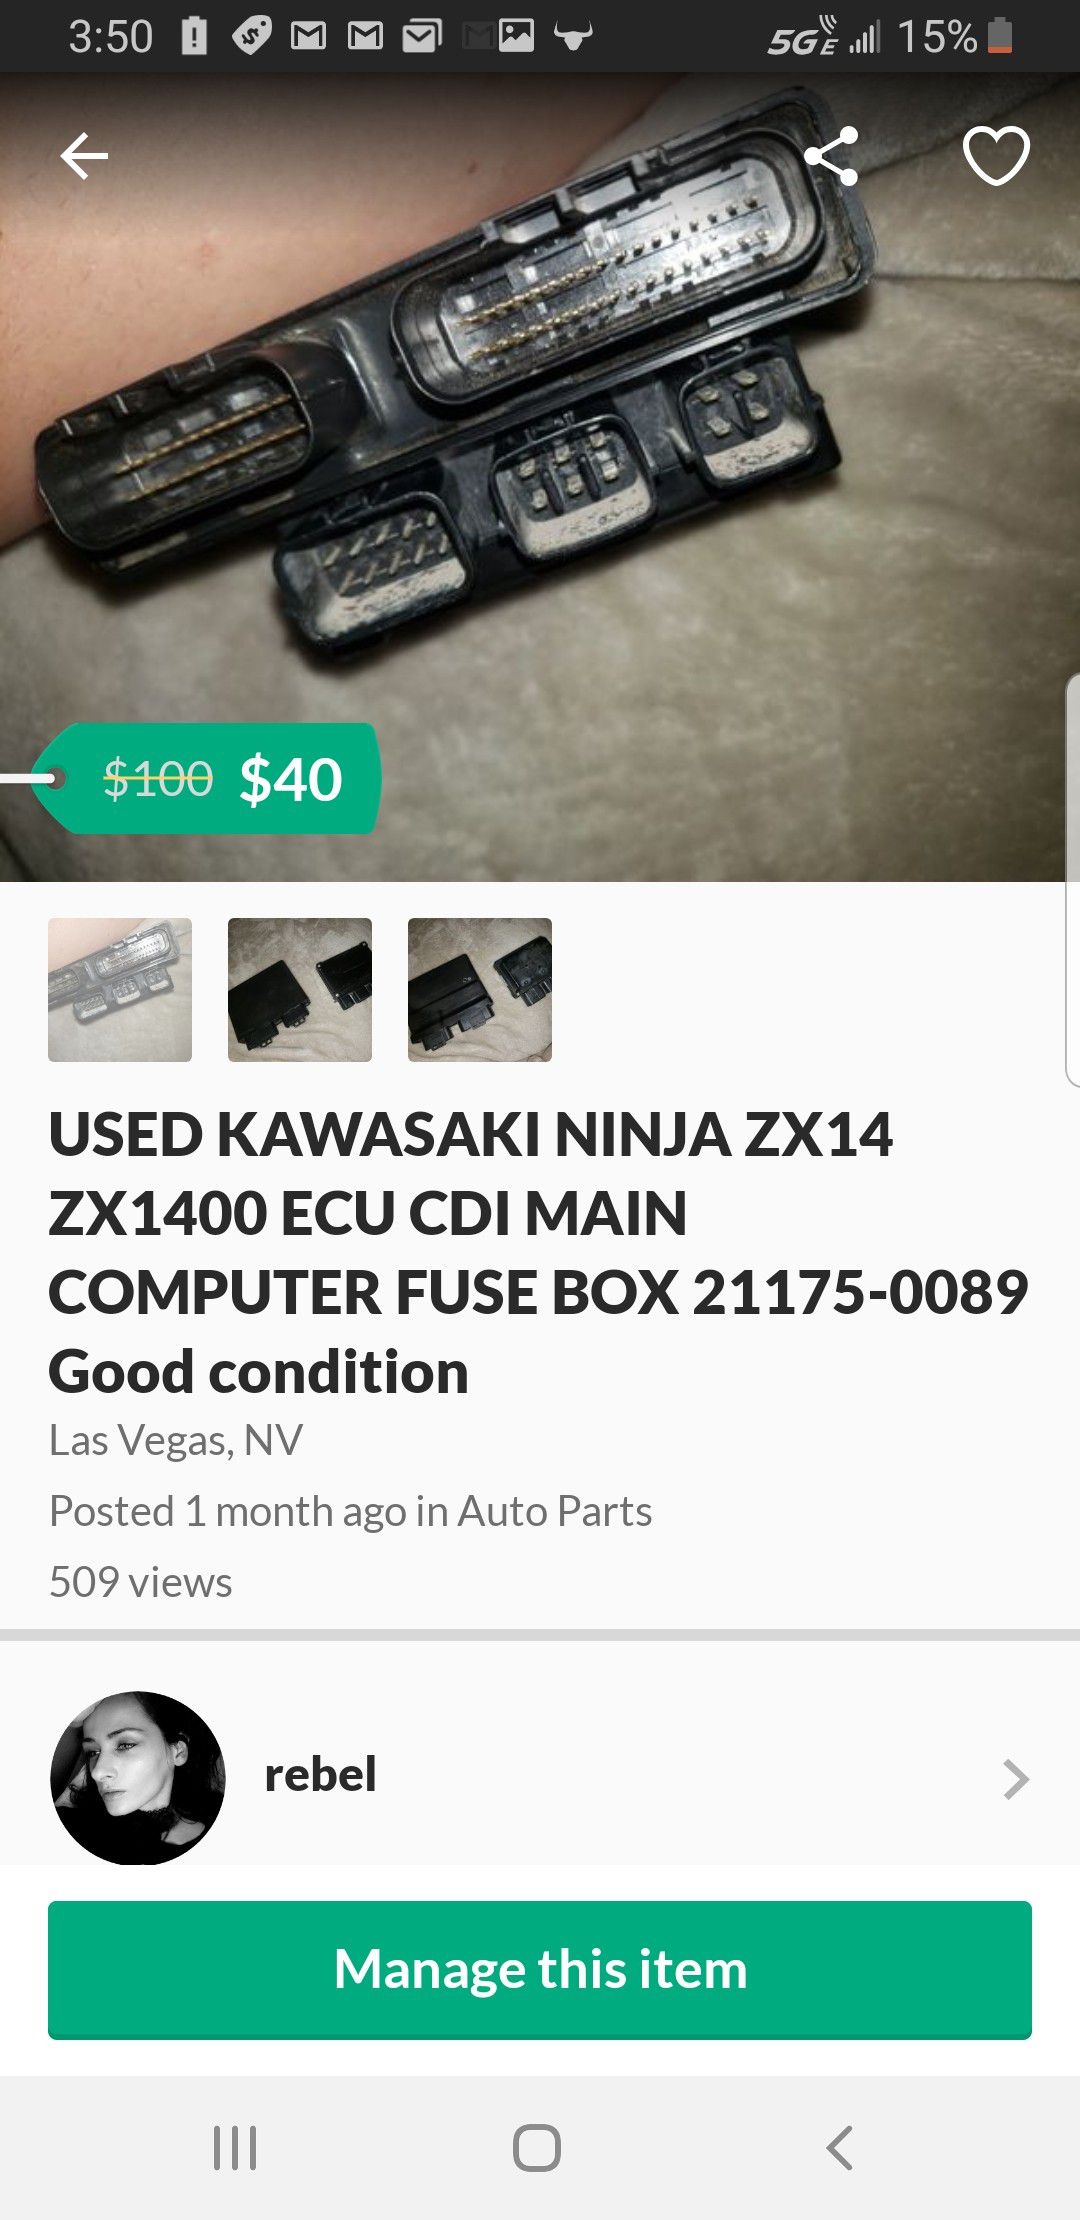 USED KAWASAKI NINJA ZX14 ZX1400 ECU CDI MAIN COMPUTER FUSE BOX 21175-0089 Good condition